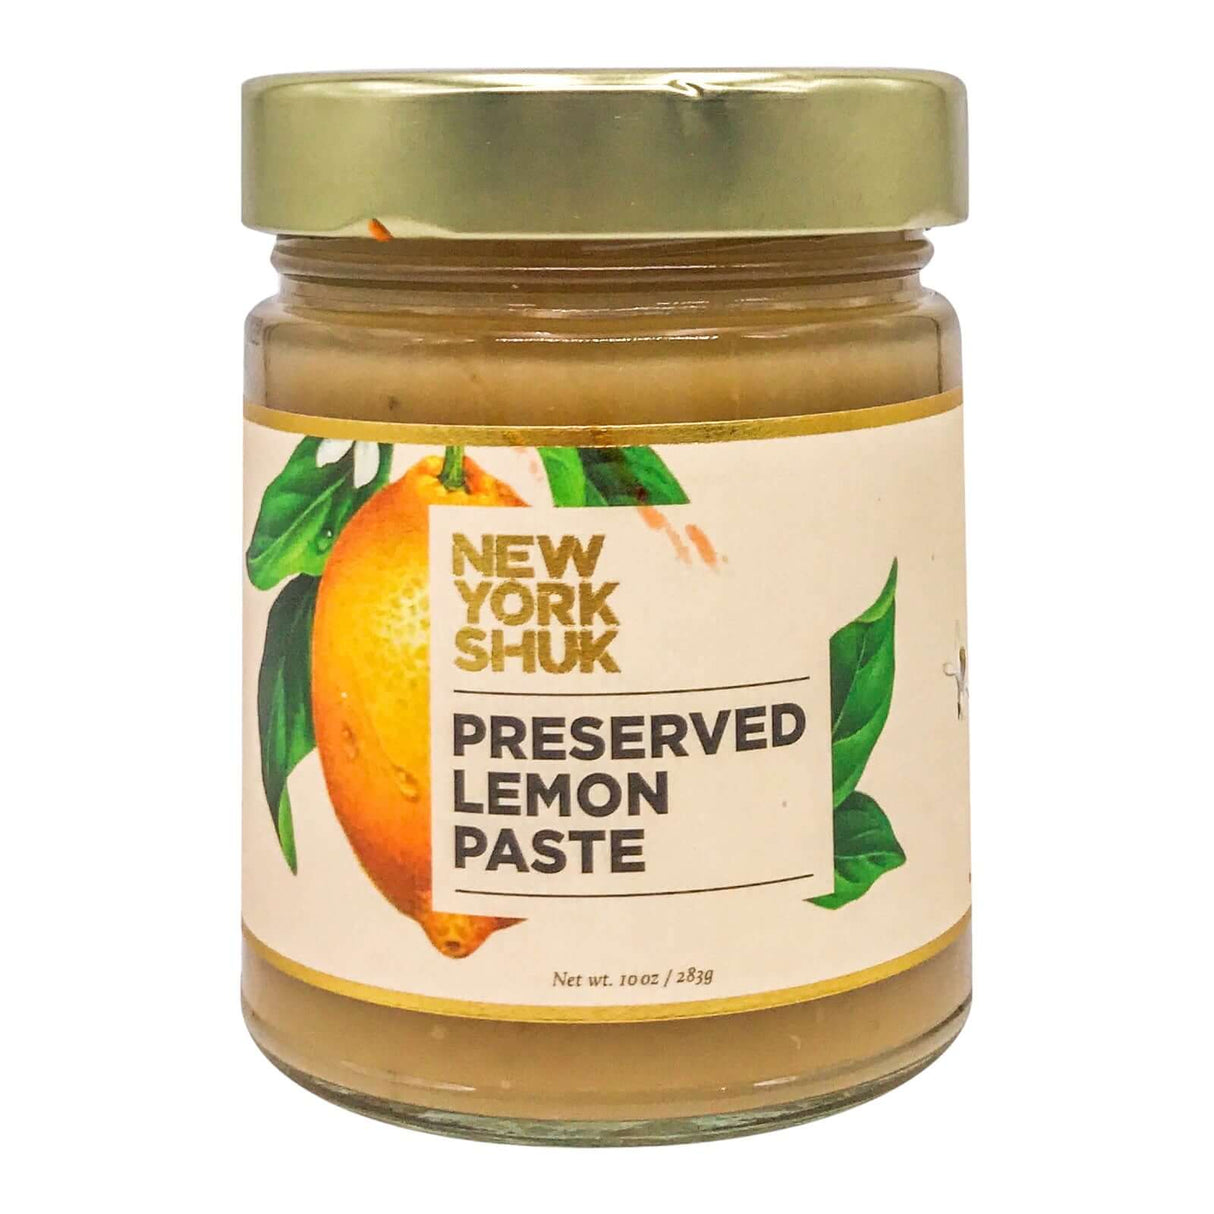 New York Shuk Preserved Lemon Paste